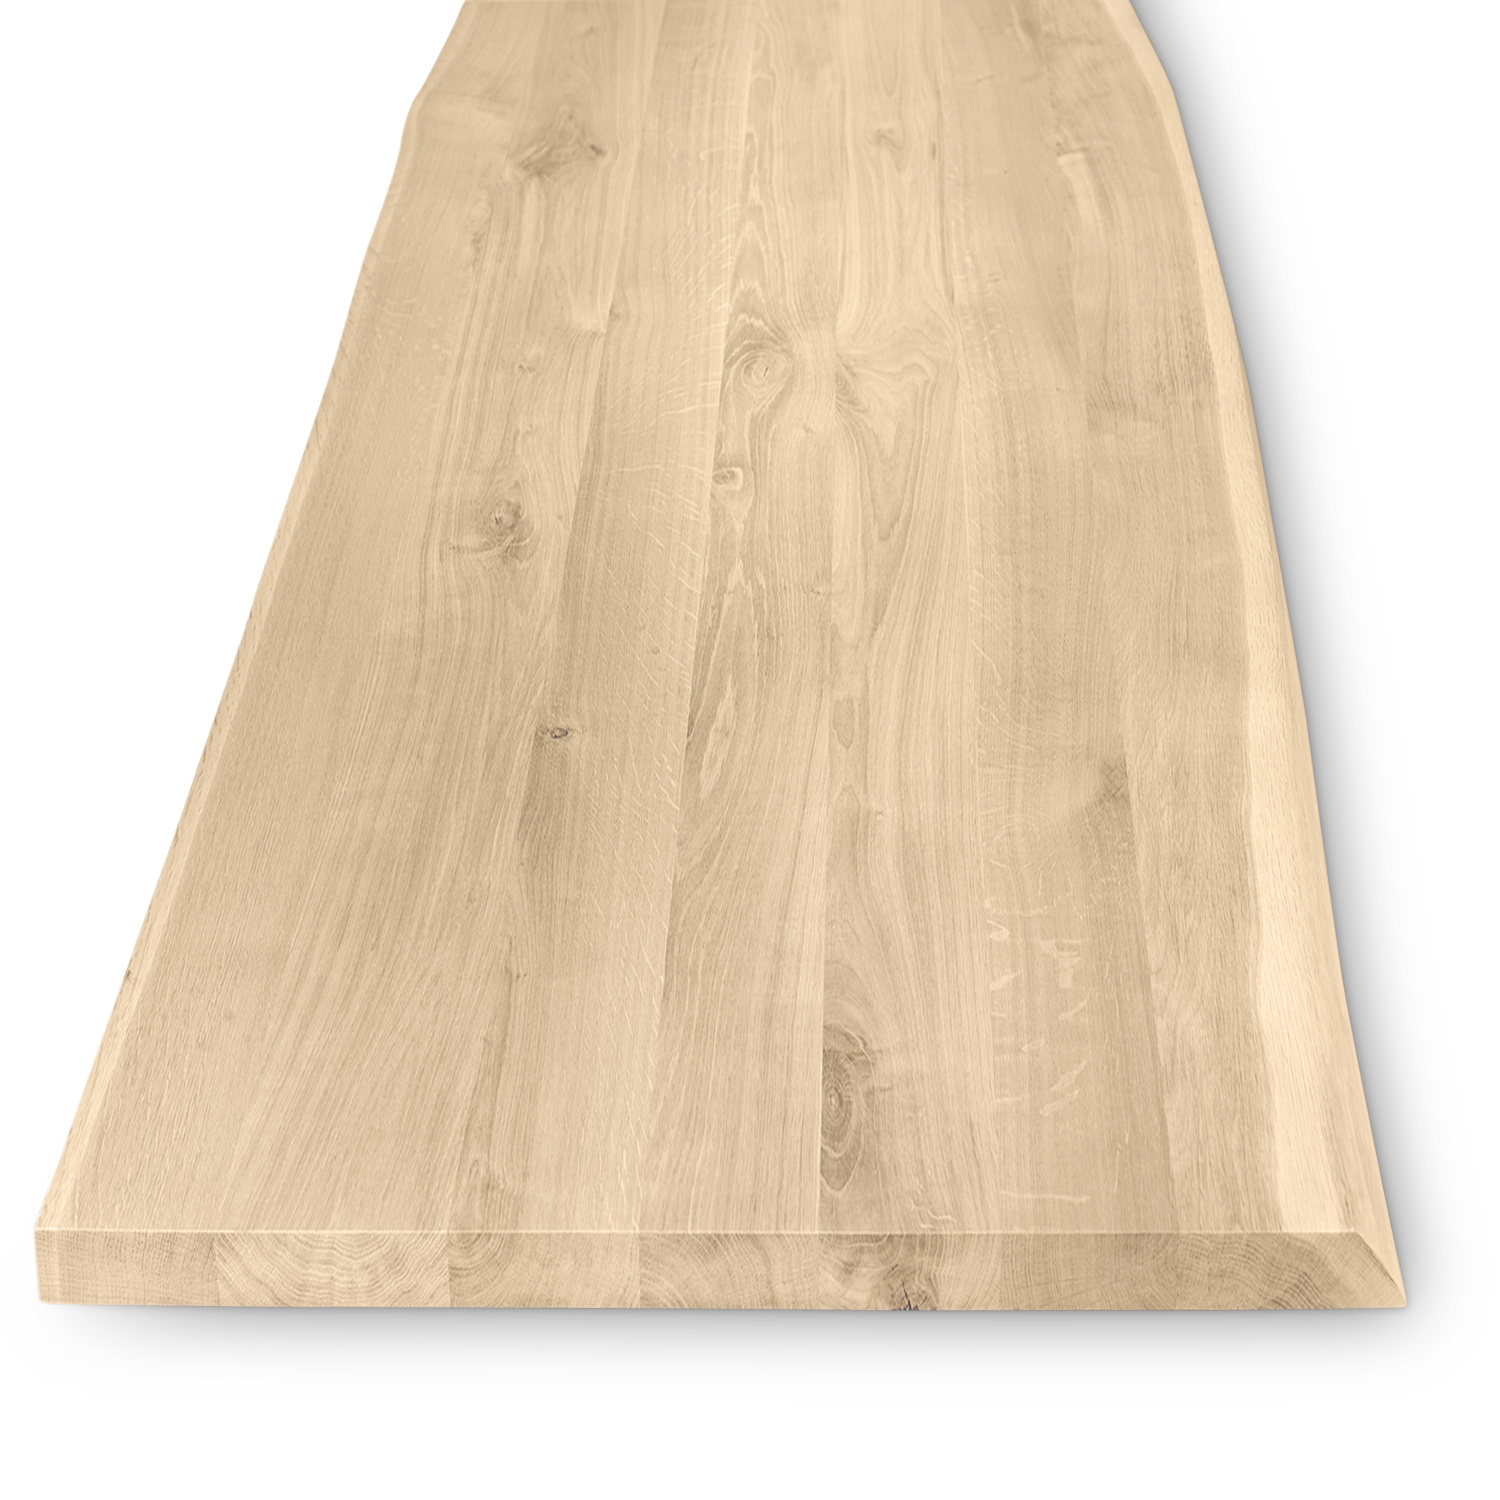  Eiken boomstam(rand) tafelblad - 4 cm dik (1-laag) - diverse afmetingen - extra rustiek Europees eikenhout met schorsrand / waankant - verlijmd kd 10-12%